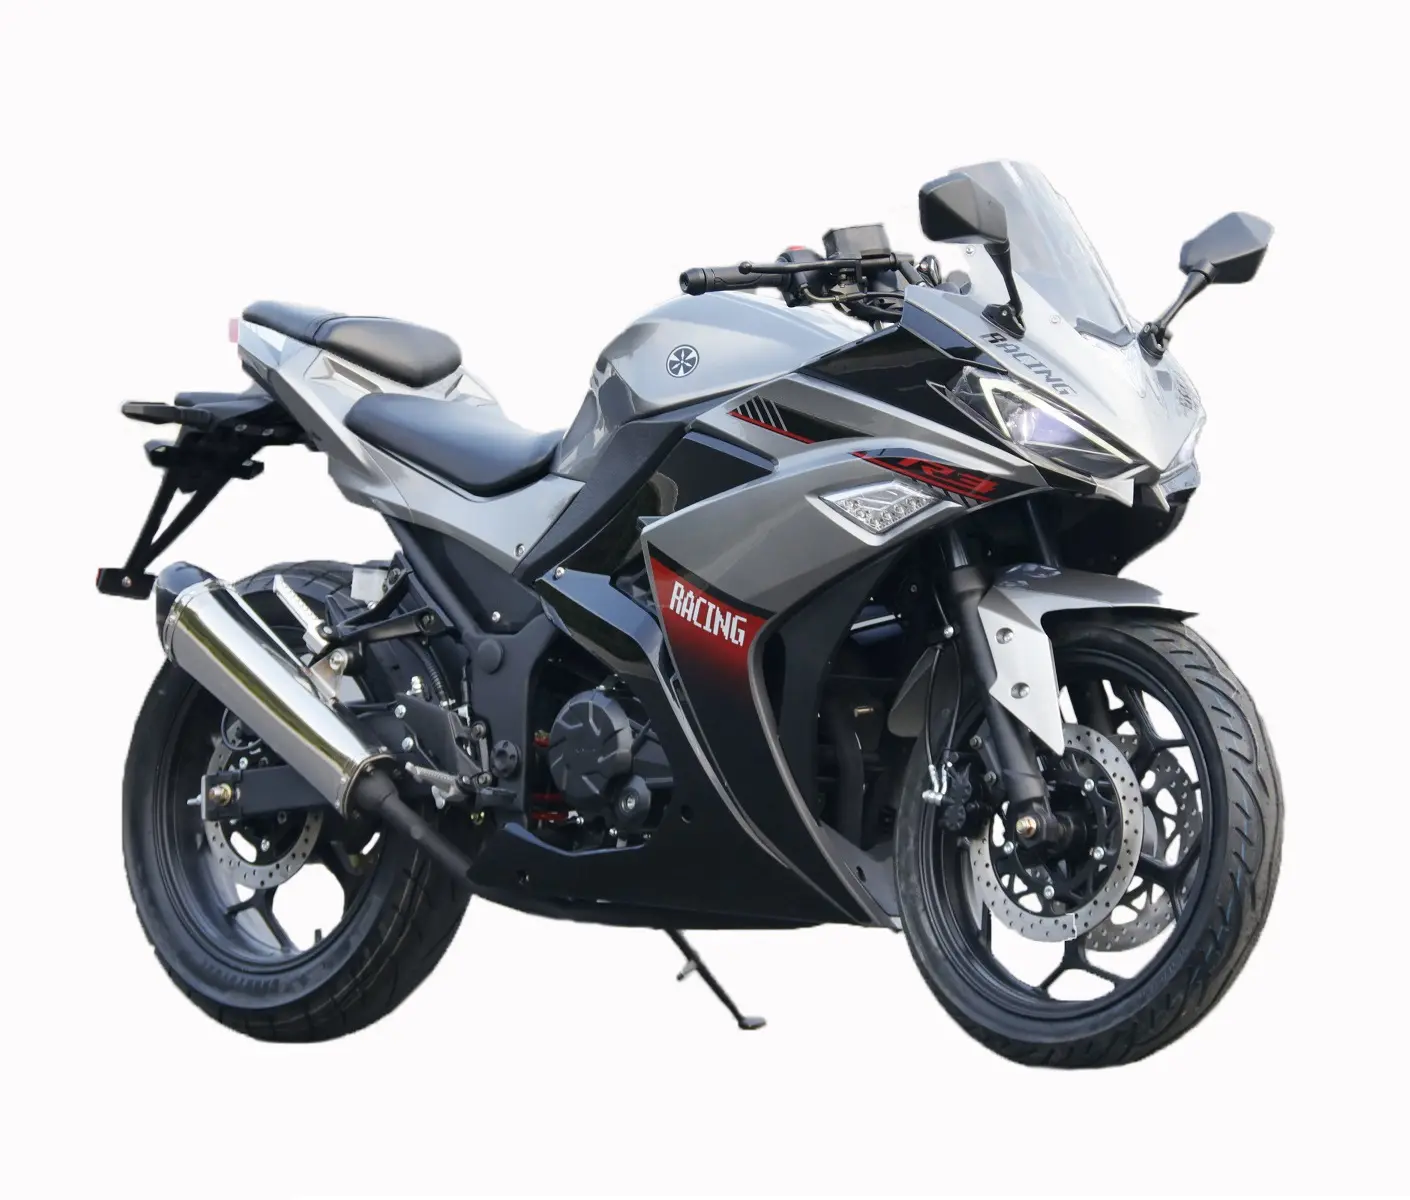 YWMS-WX-V6 400CC डबल सिलेंडर वॉटर कूलिंग स्पोर्ट स्ट्रीट मोटरसाइकिल बॉक्सर पेट्रोल मोटरसाइकिल वयस्क भारी मोटरसाइकिल